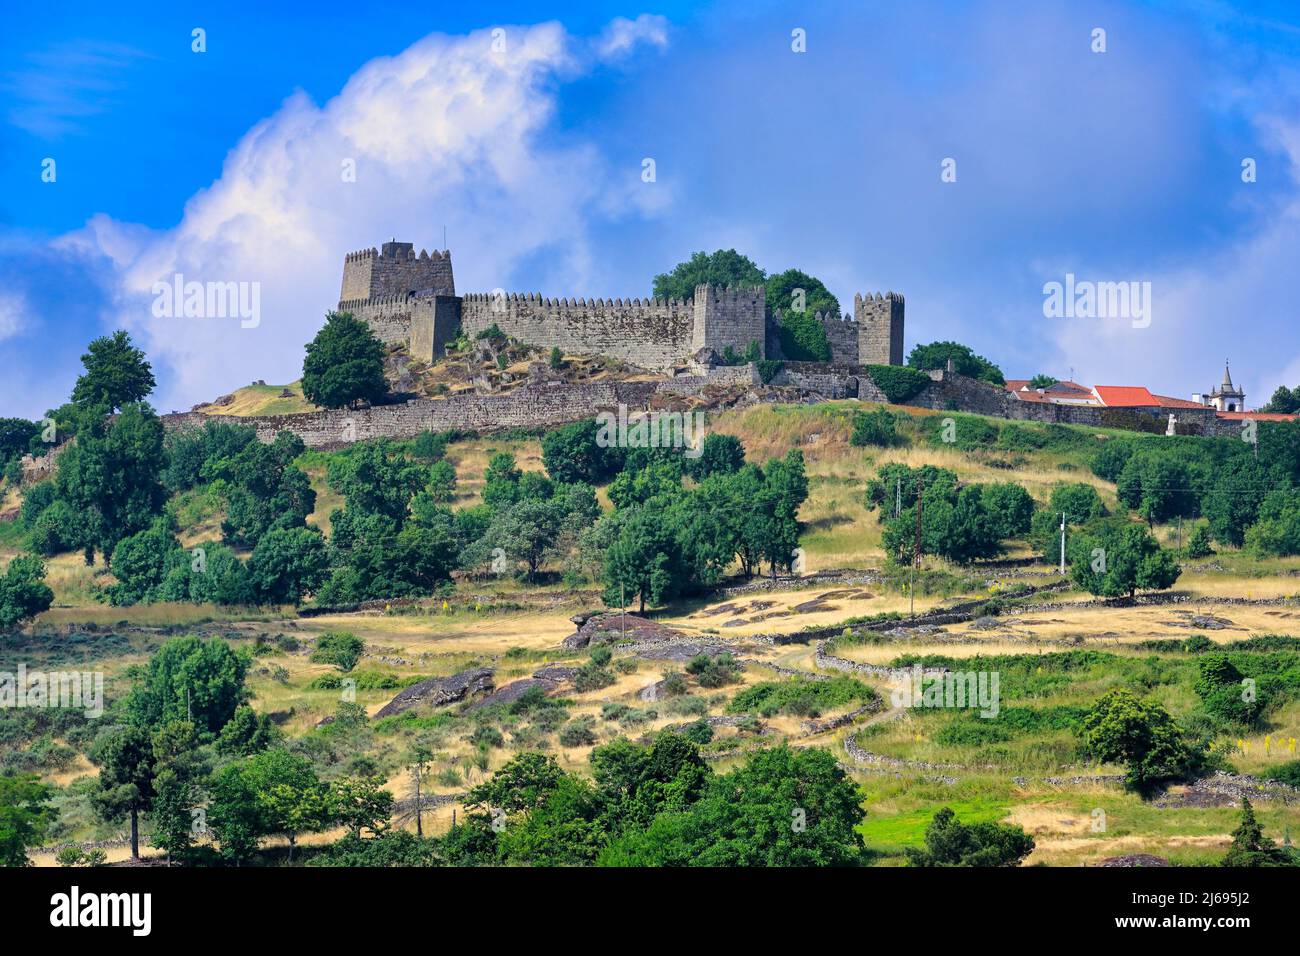 View to the castle, Trancoso, Serra da Estrela, Centro, Portugal Stock Photo